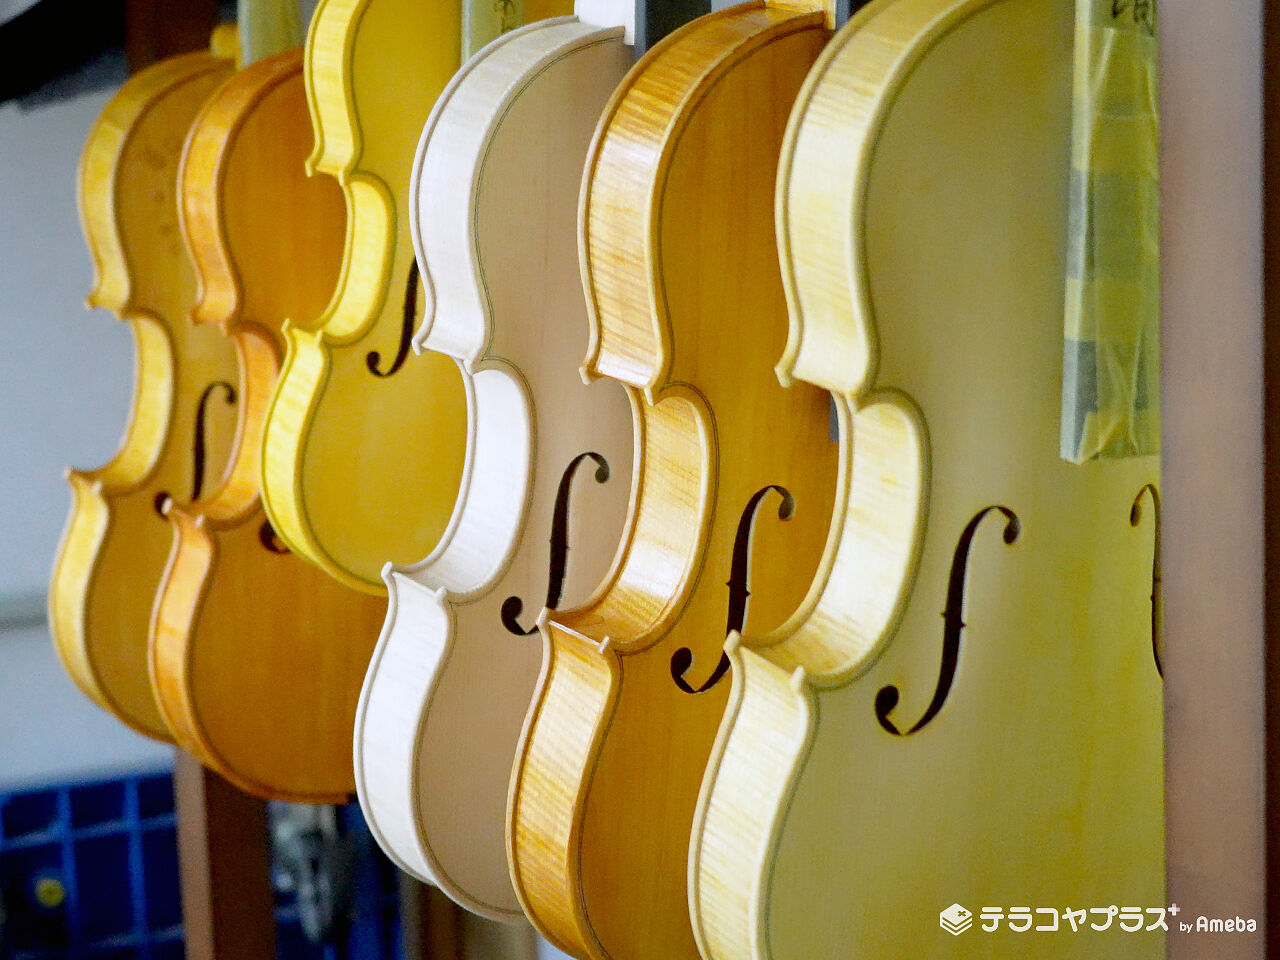 キットバイオリンで作ったバイオリンの画像